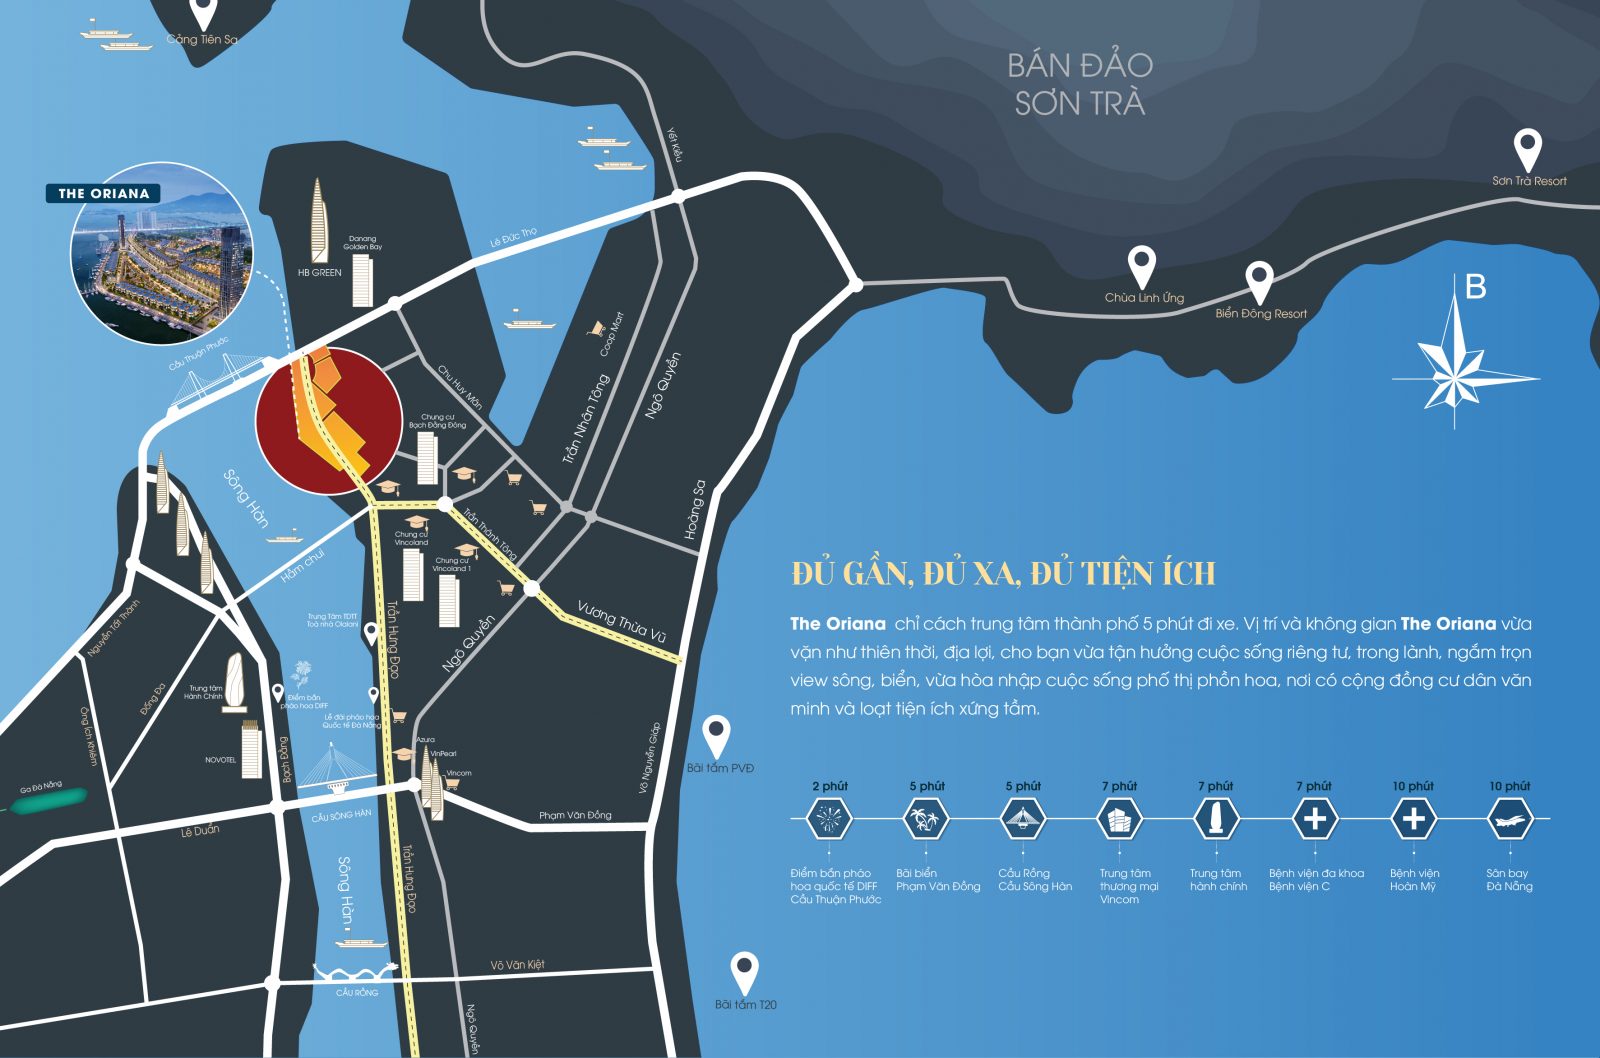 Bản đồ dự án PHÂN KHU THE ORIANA